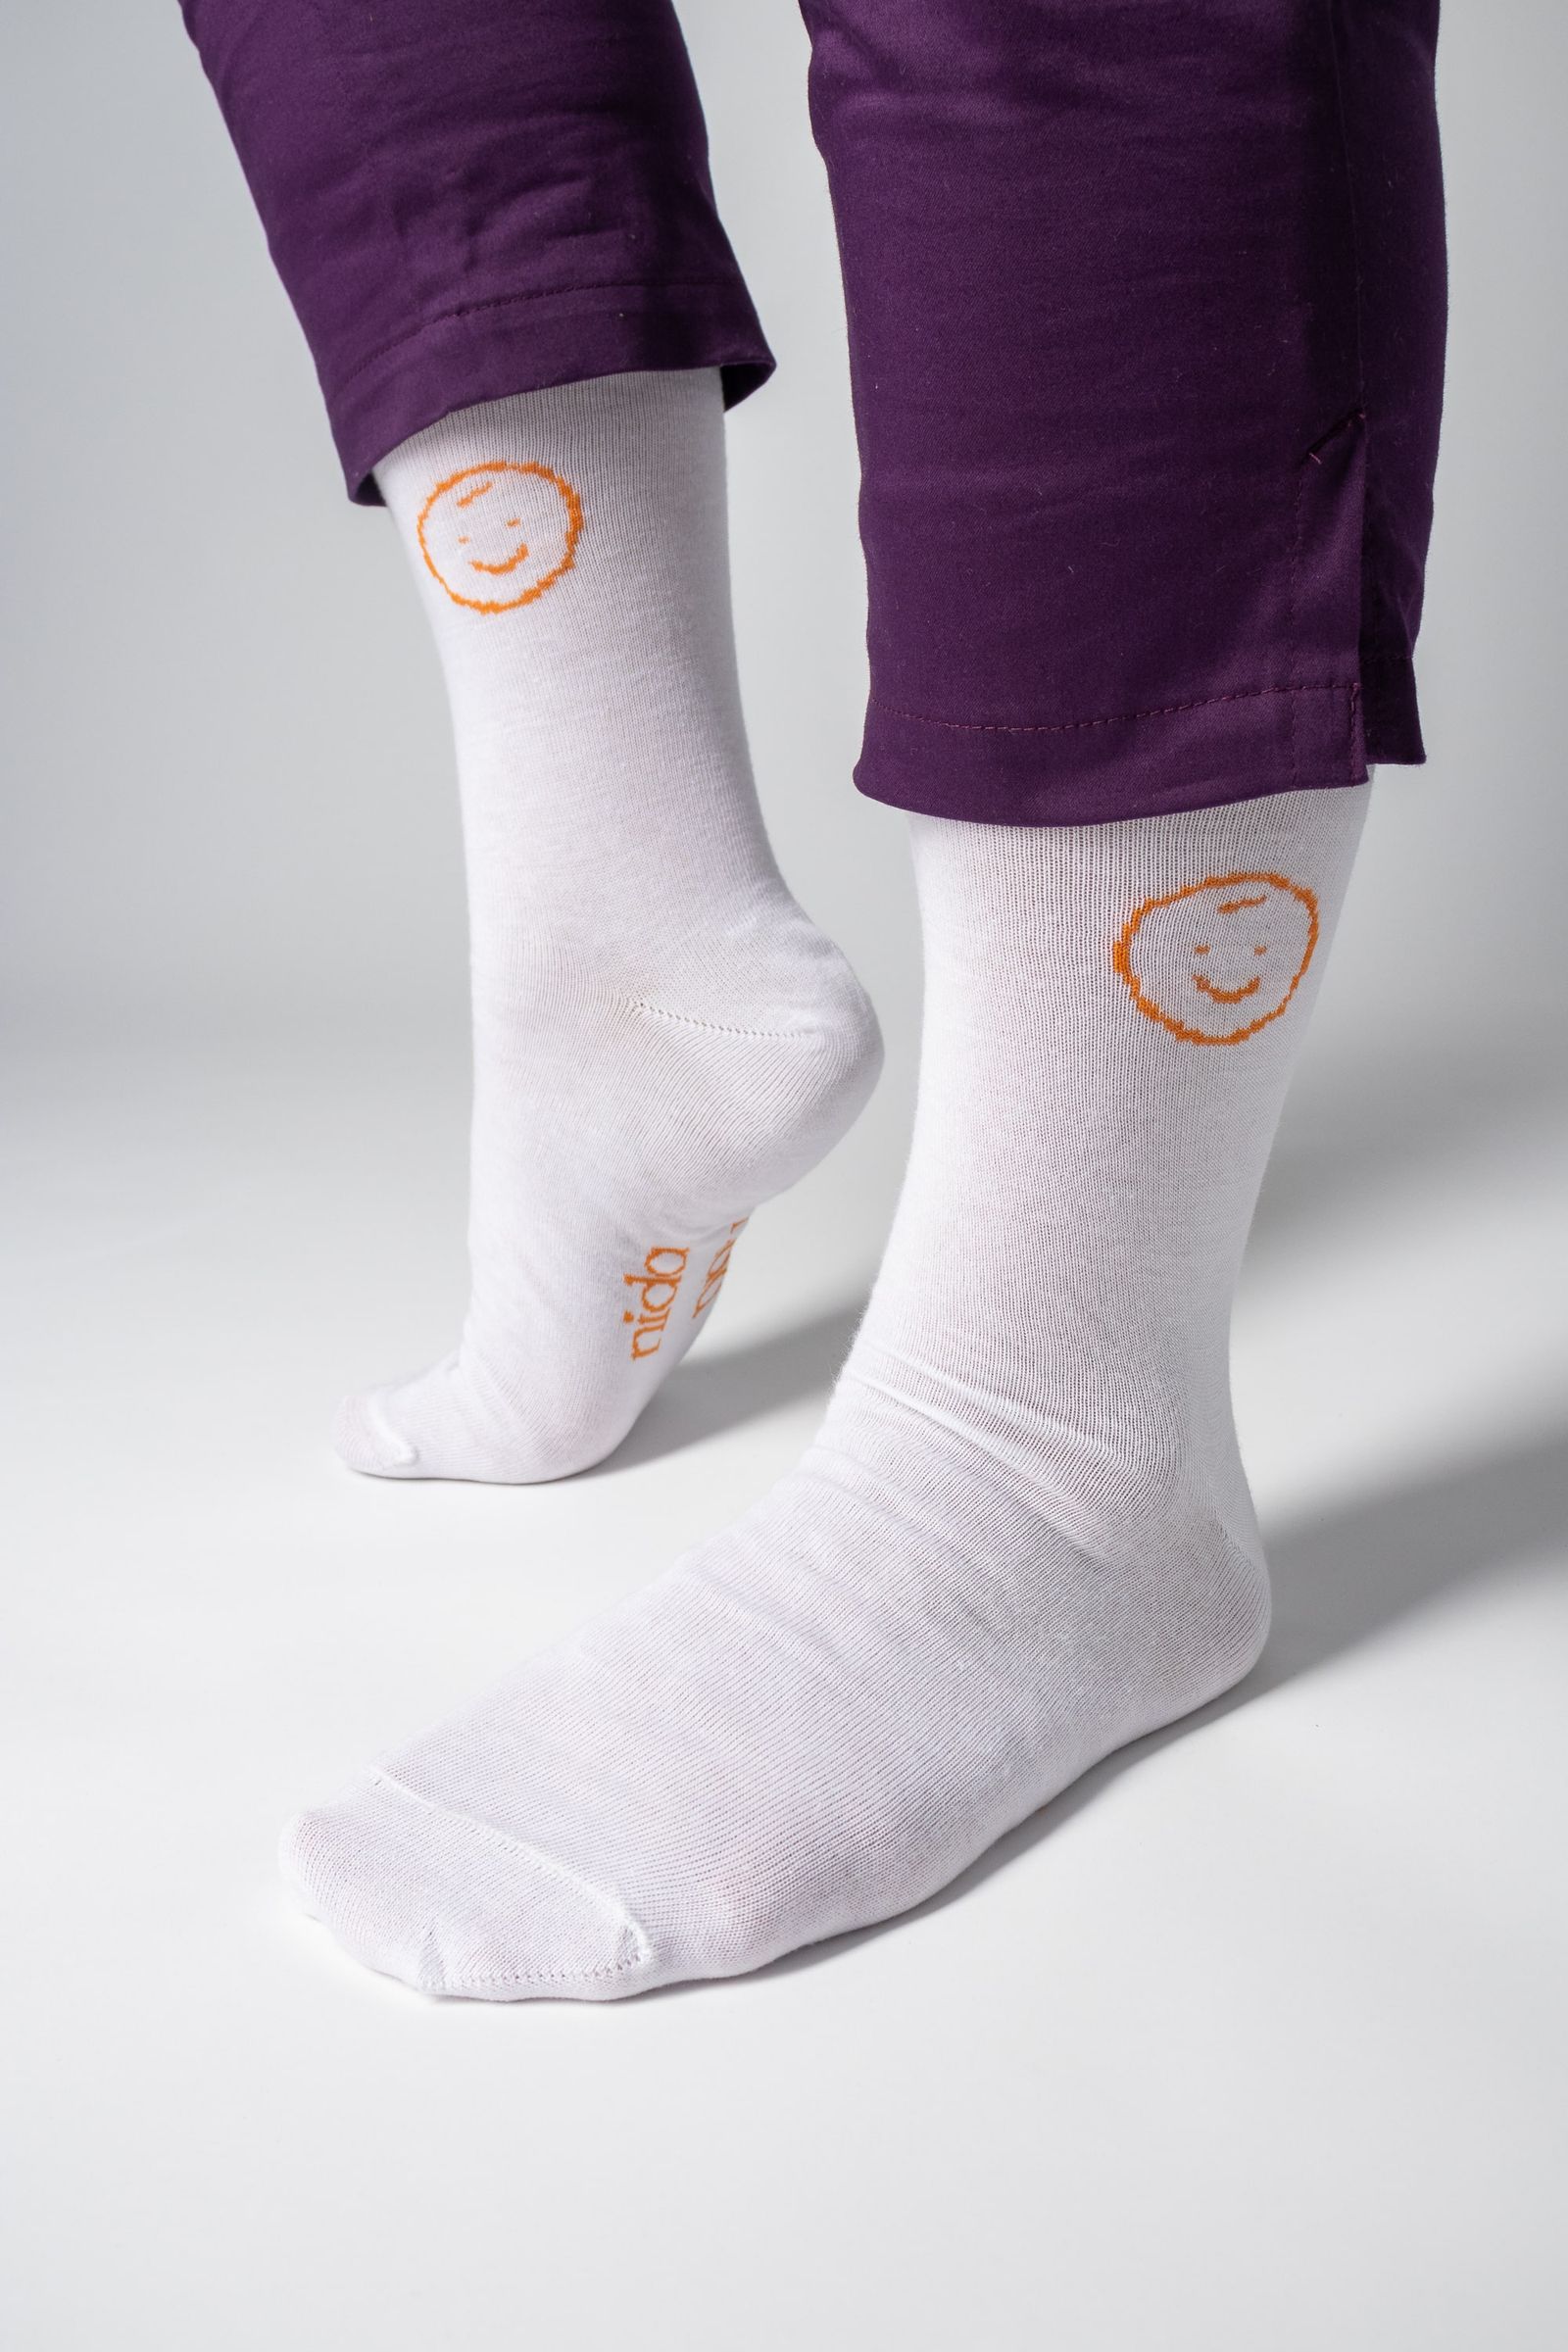 White socks - 1 pair - NIDA